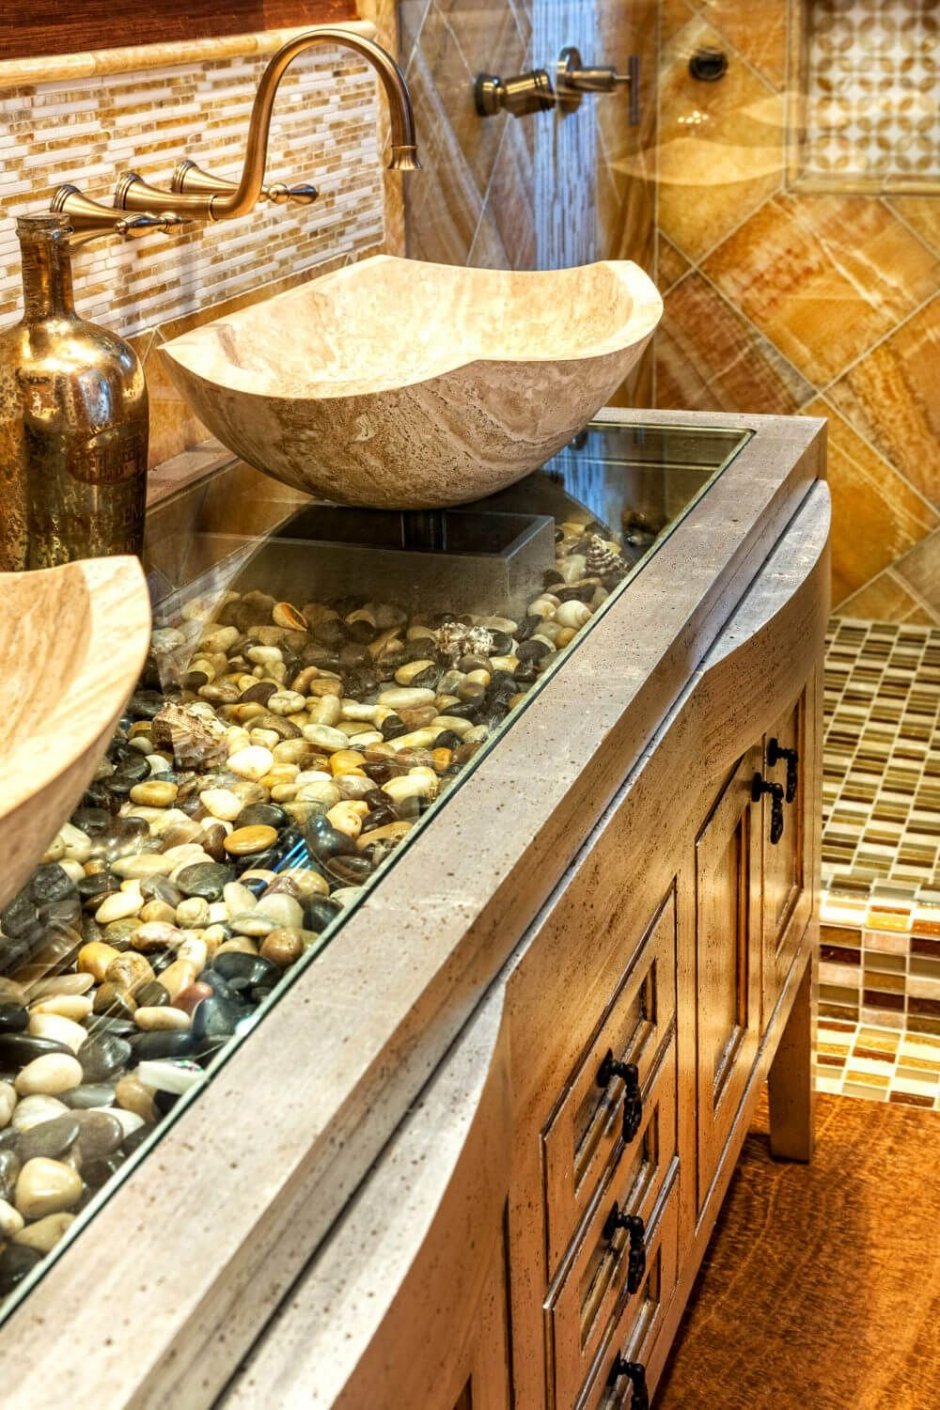 Морские камни в интерьере ванной